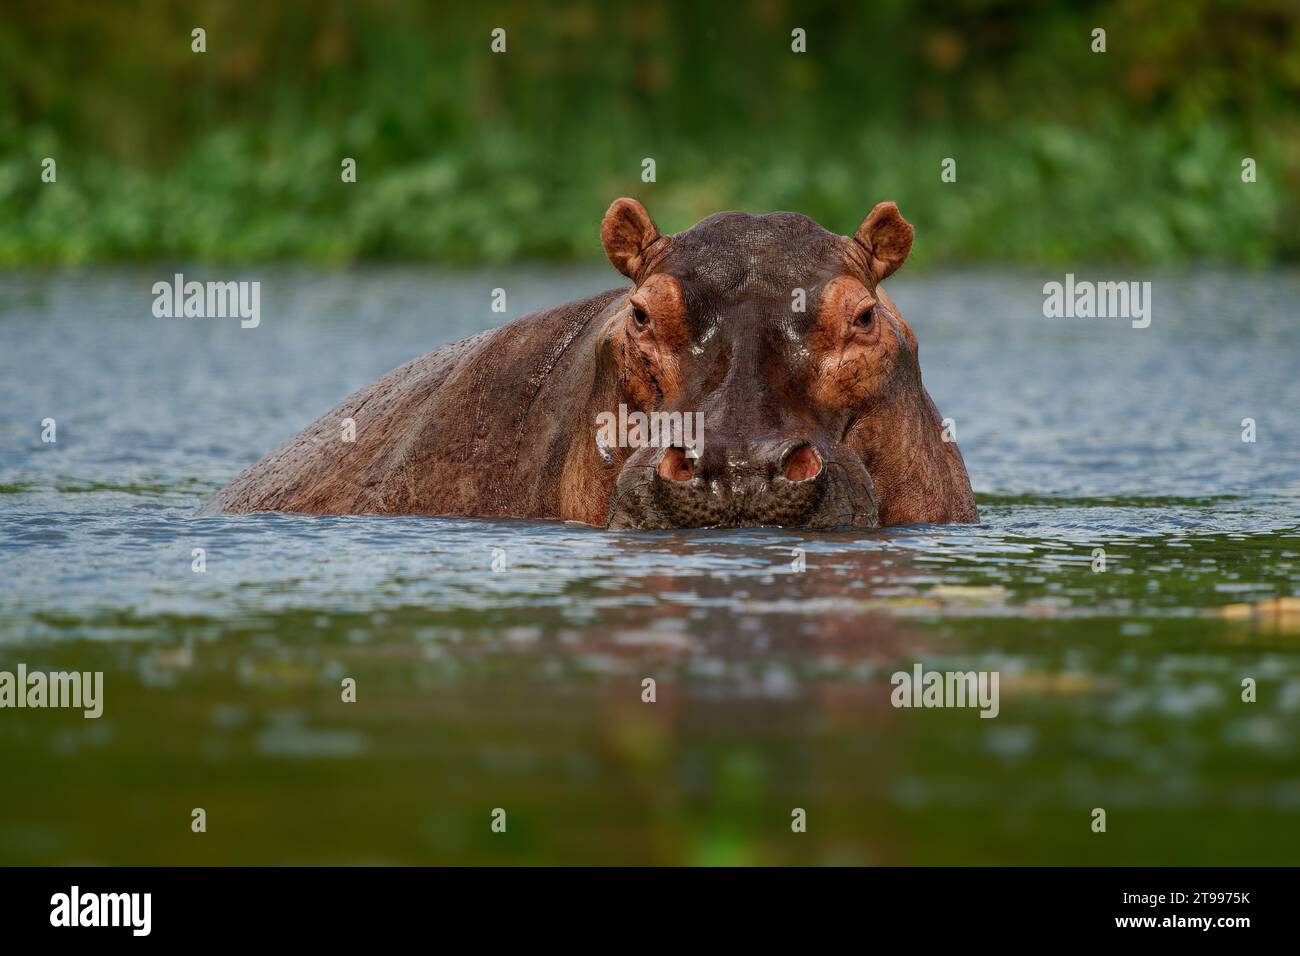 Hippopotamus - Hippopotamus amphibius oder Hippo ist groß, reine Pflanzenfresser, semiaquatic Säugetier beheimatet in Afrika südlich der Sahara. Kopf aus dem wa Stockfoto